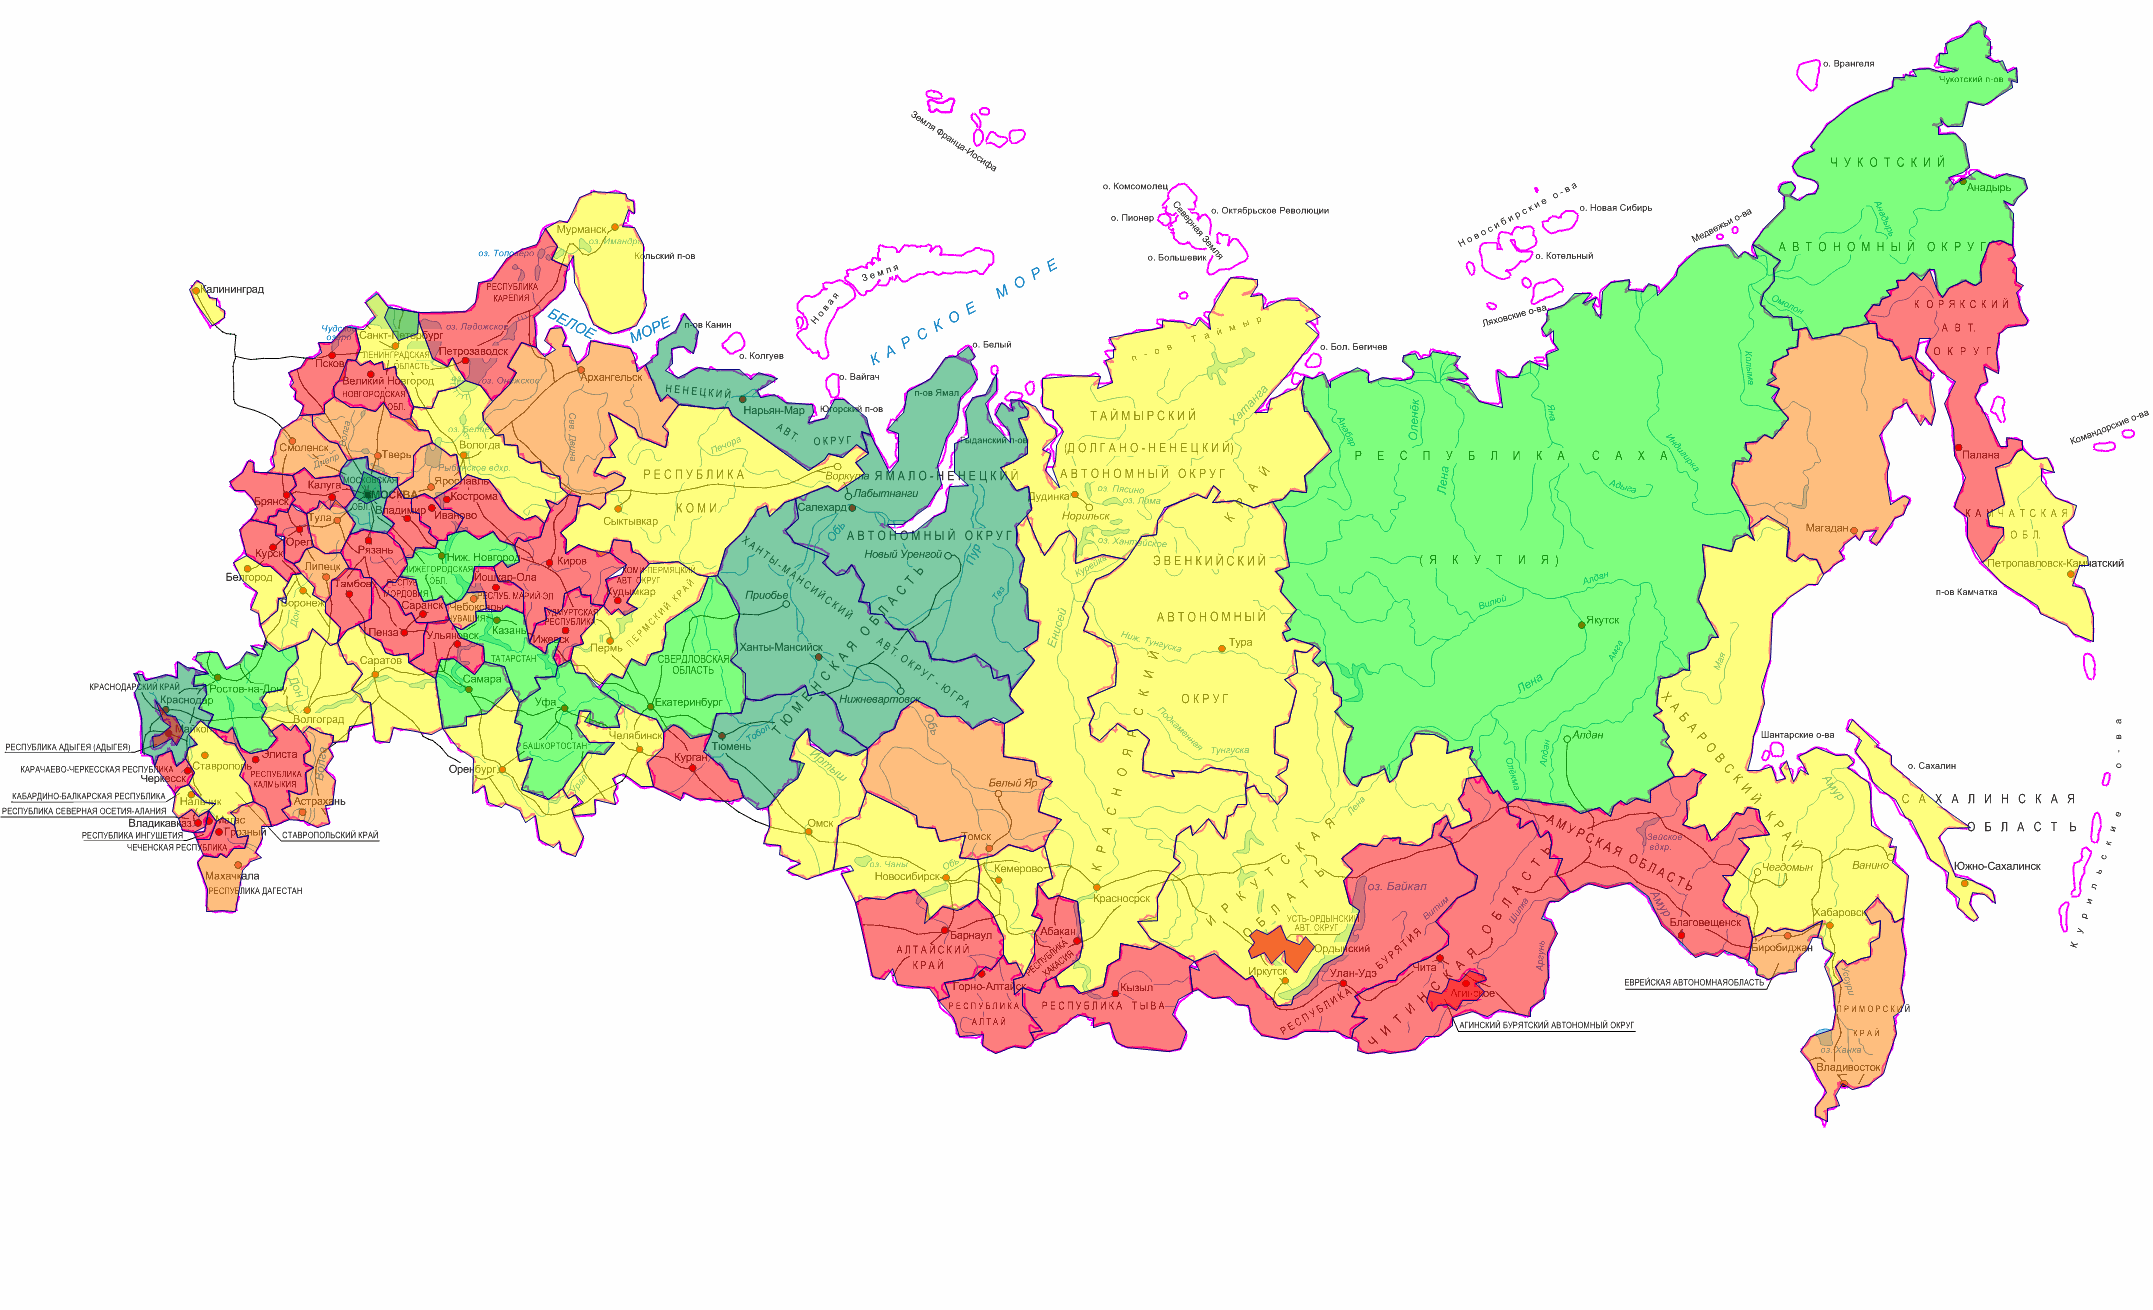 Западные регионы на карте